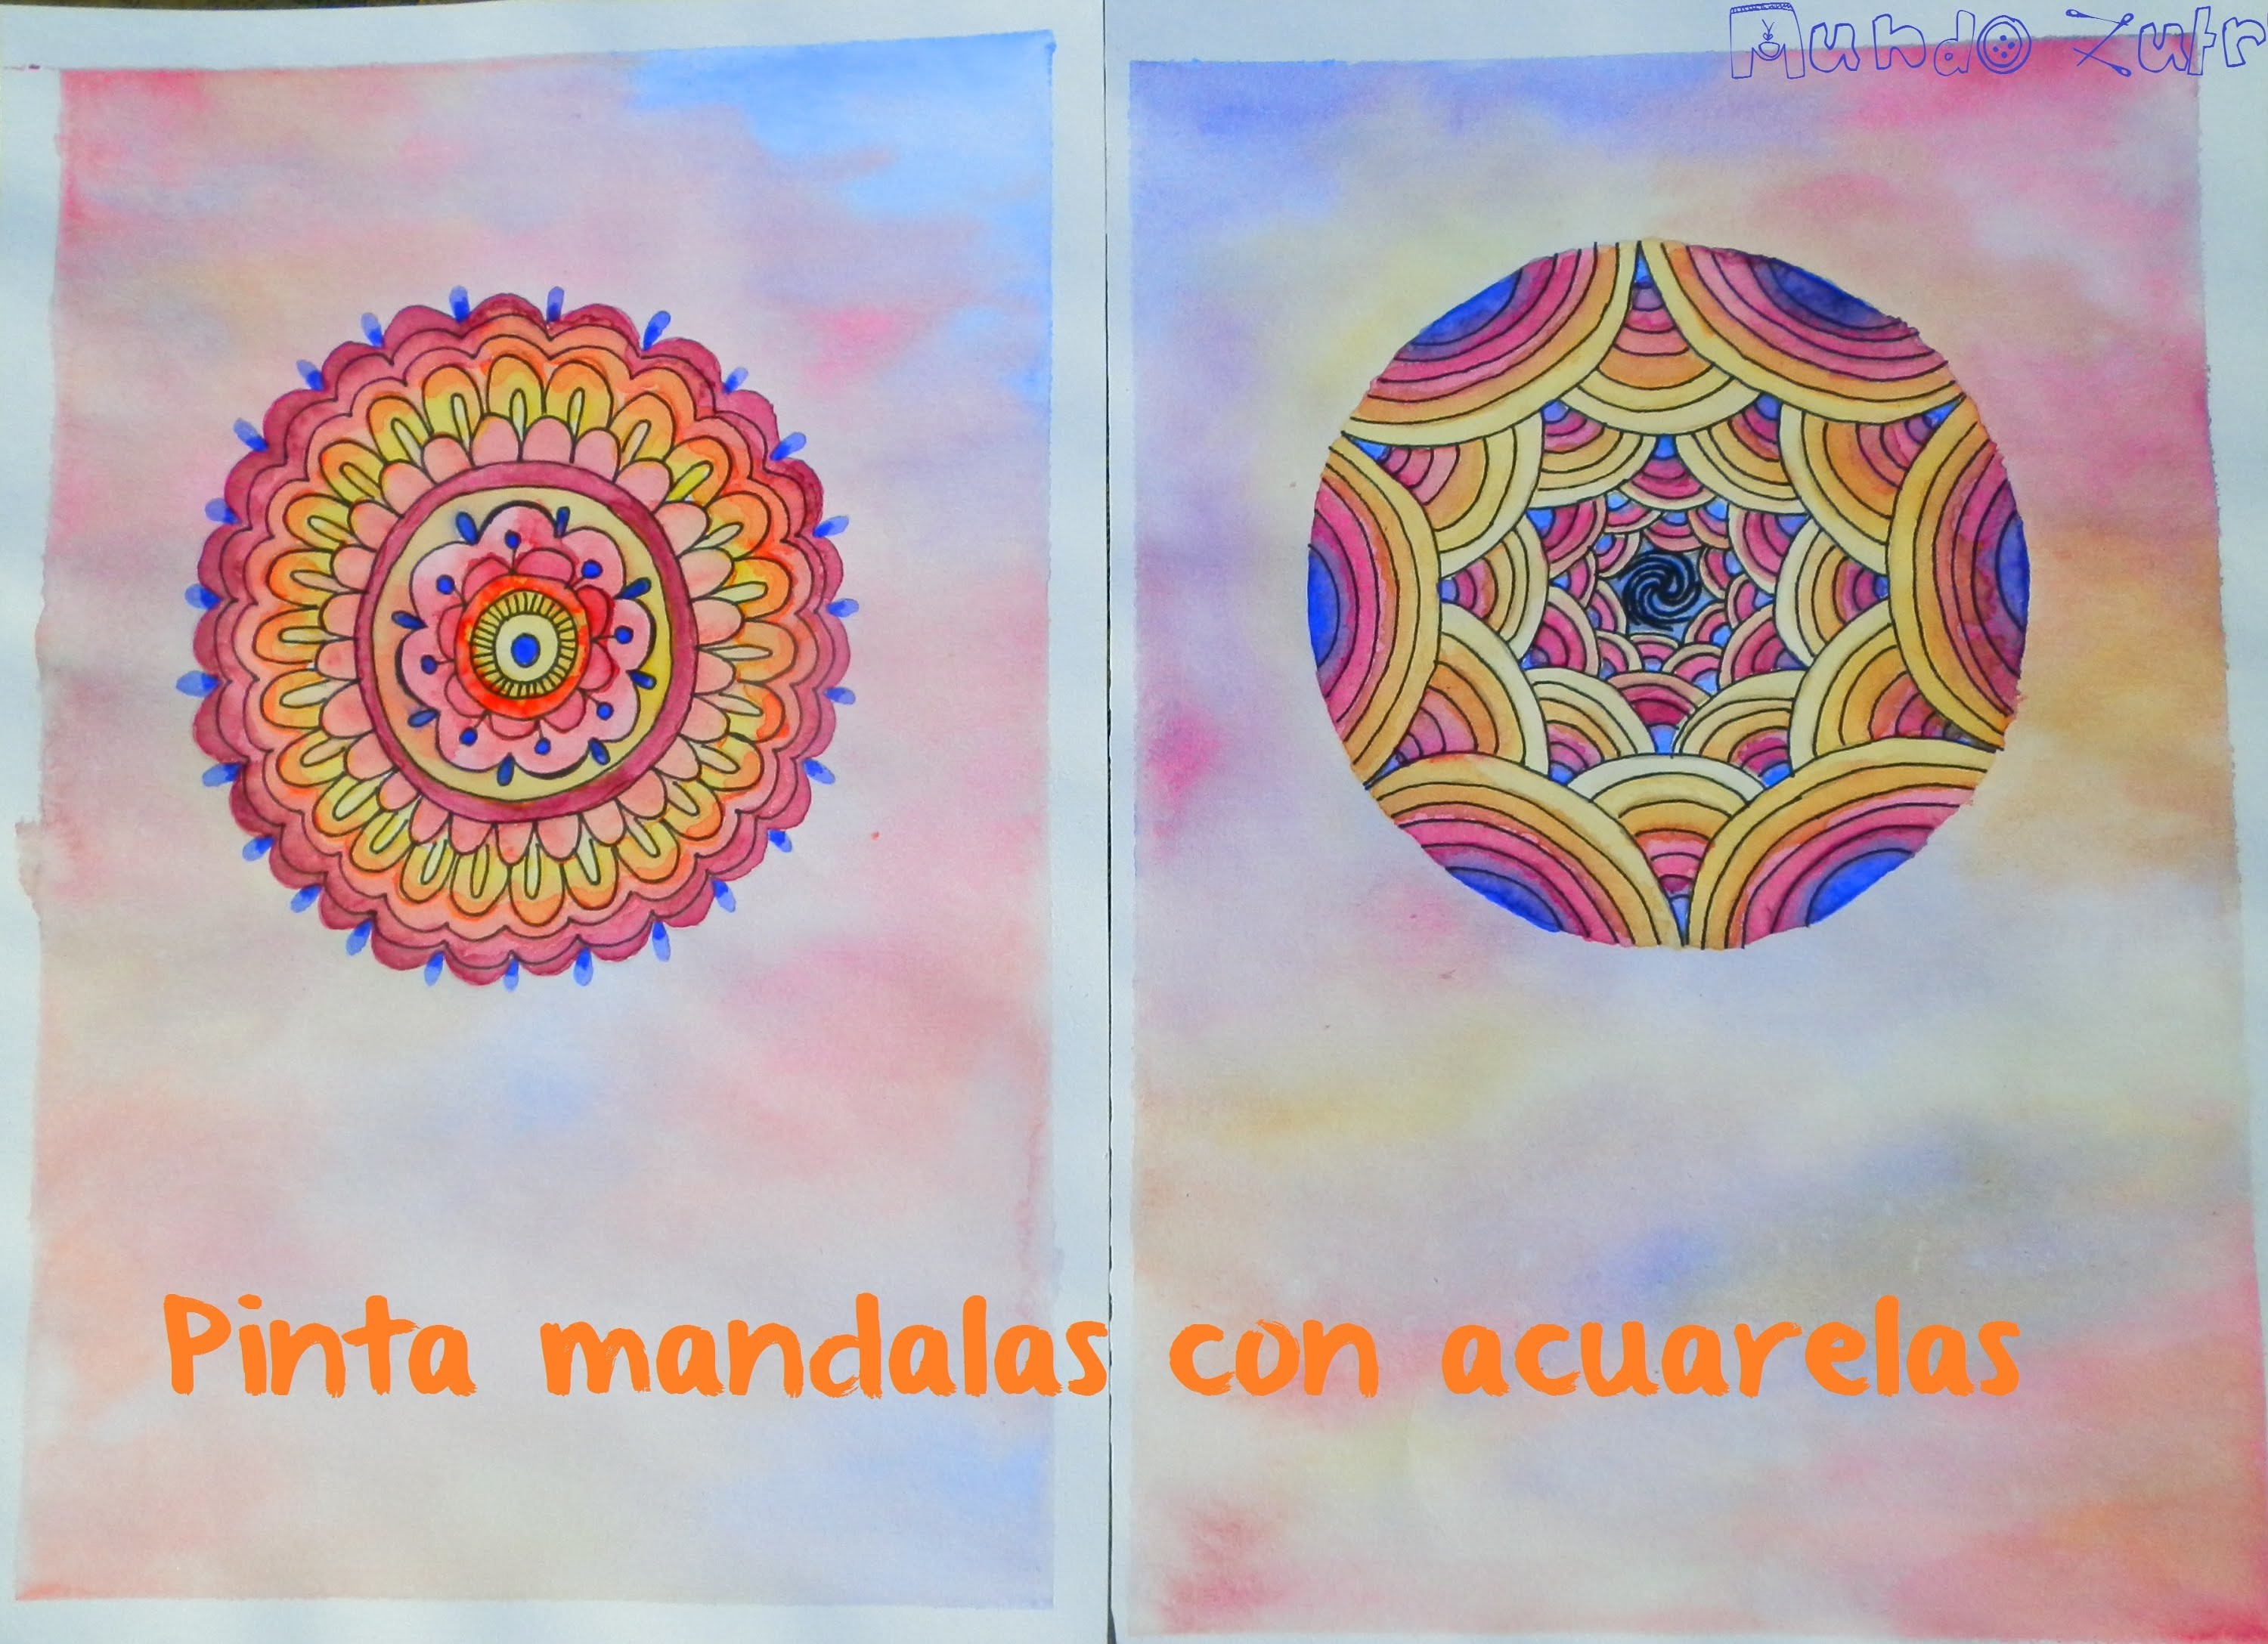 Pinta un mandala con acuarelas - Paint a watercolors mandala